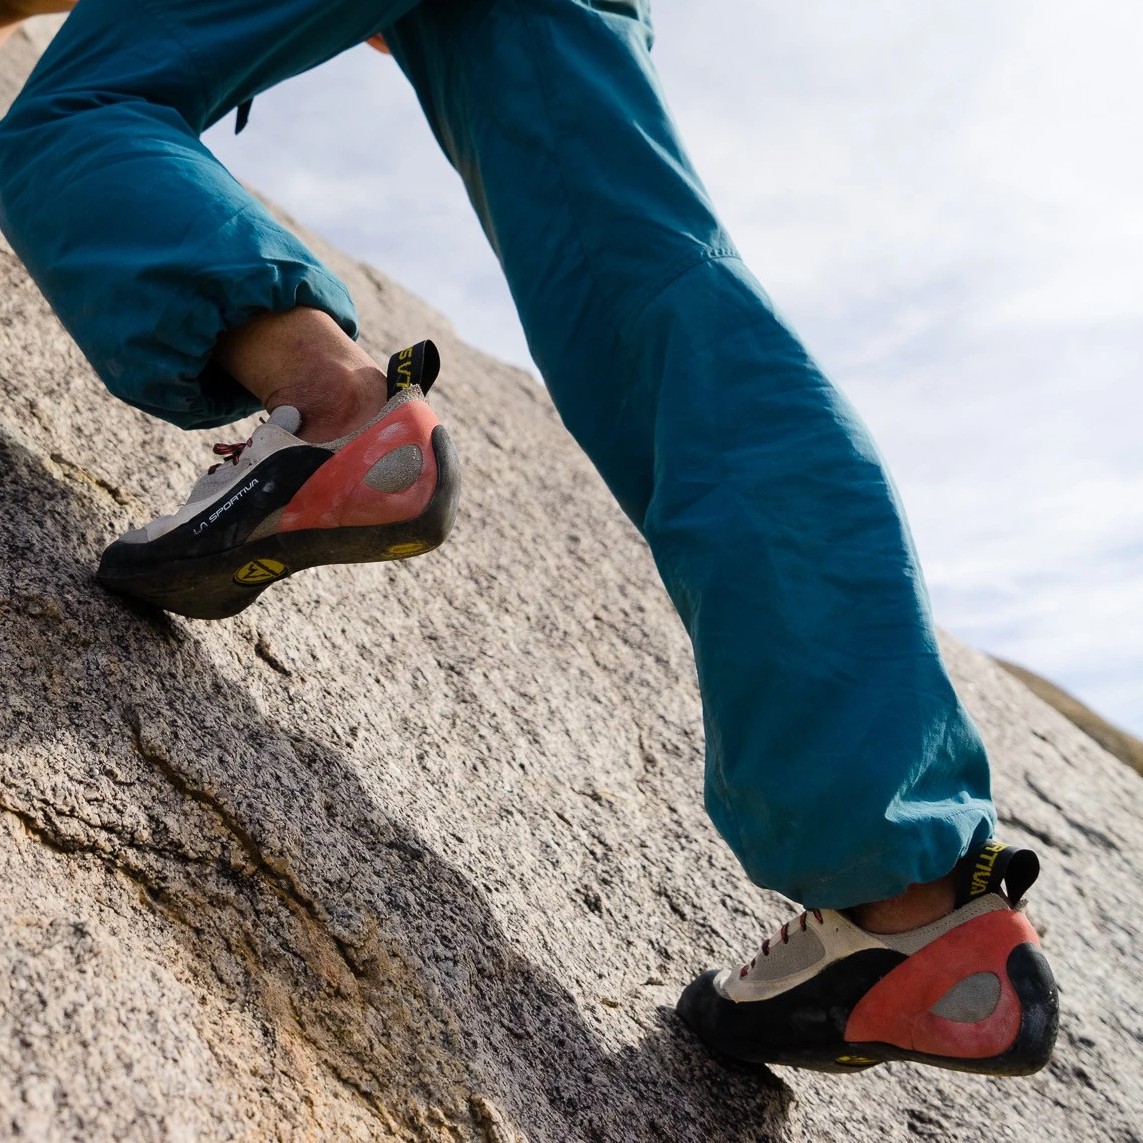 La Sportiva Finale Women's Rock Climbing Shoes